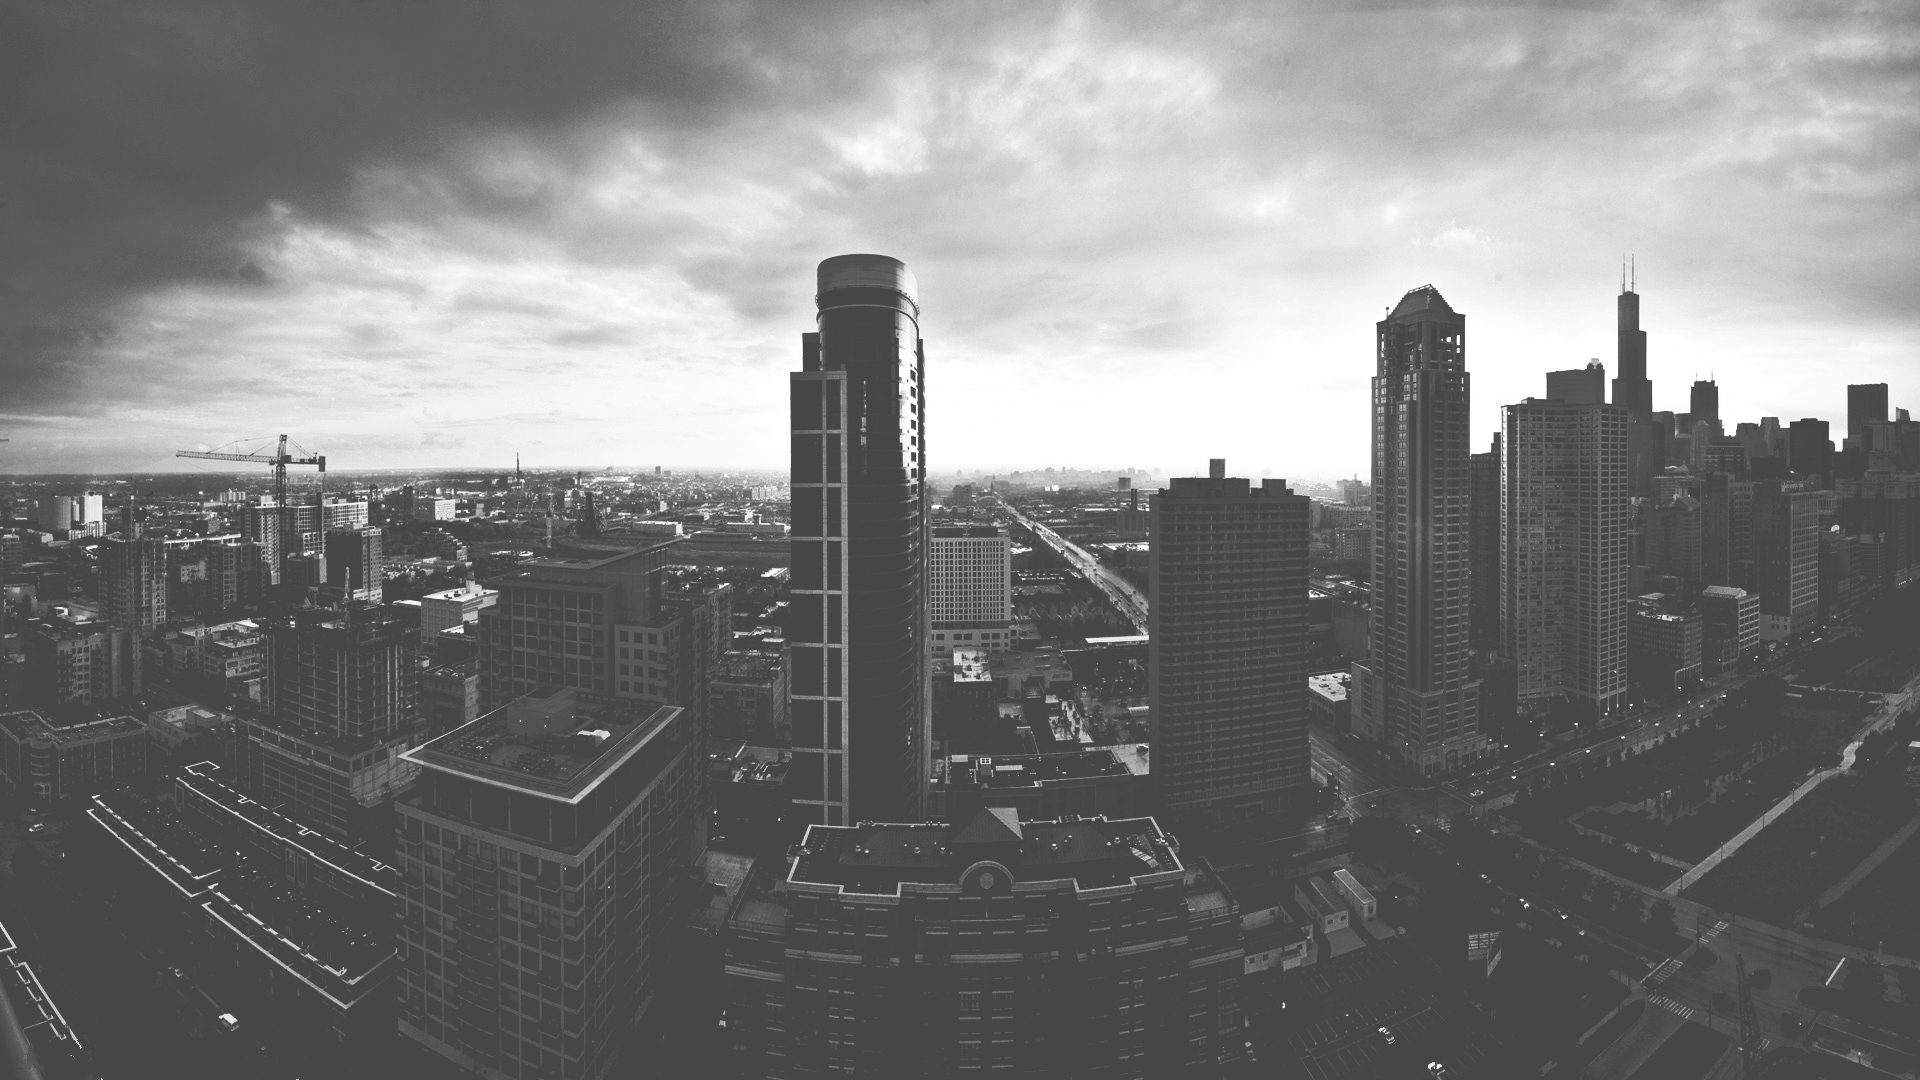 paisaje urbano fondos de pantalla en blanco y negro,área metropolitana,ciudad,paisaje urbano,área urbana,rascacielos